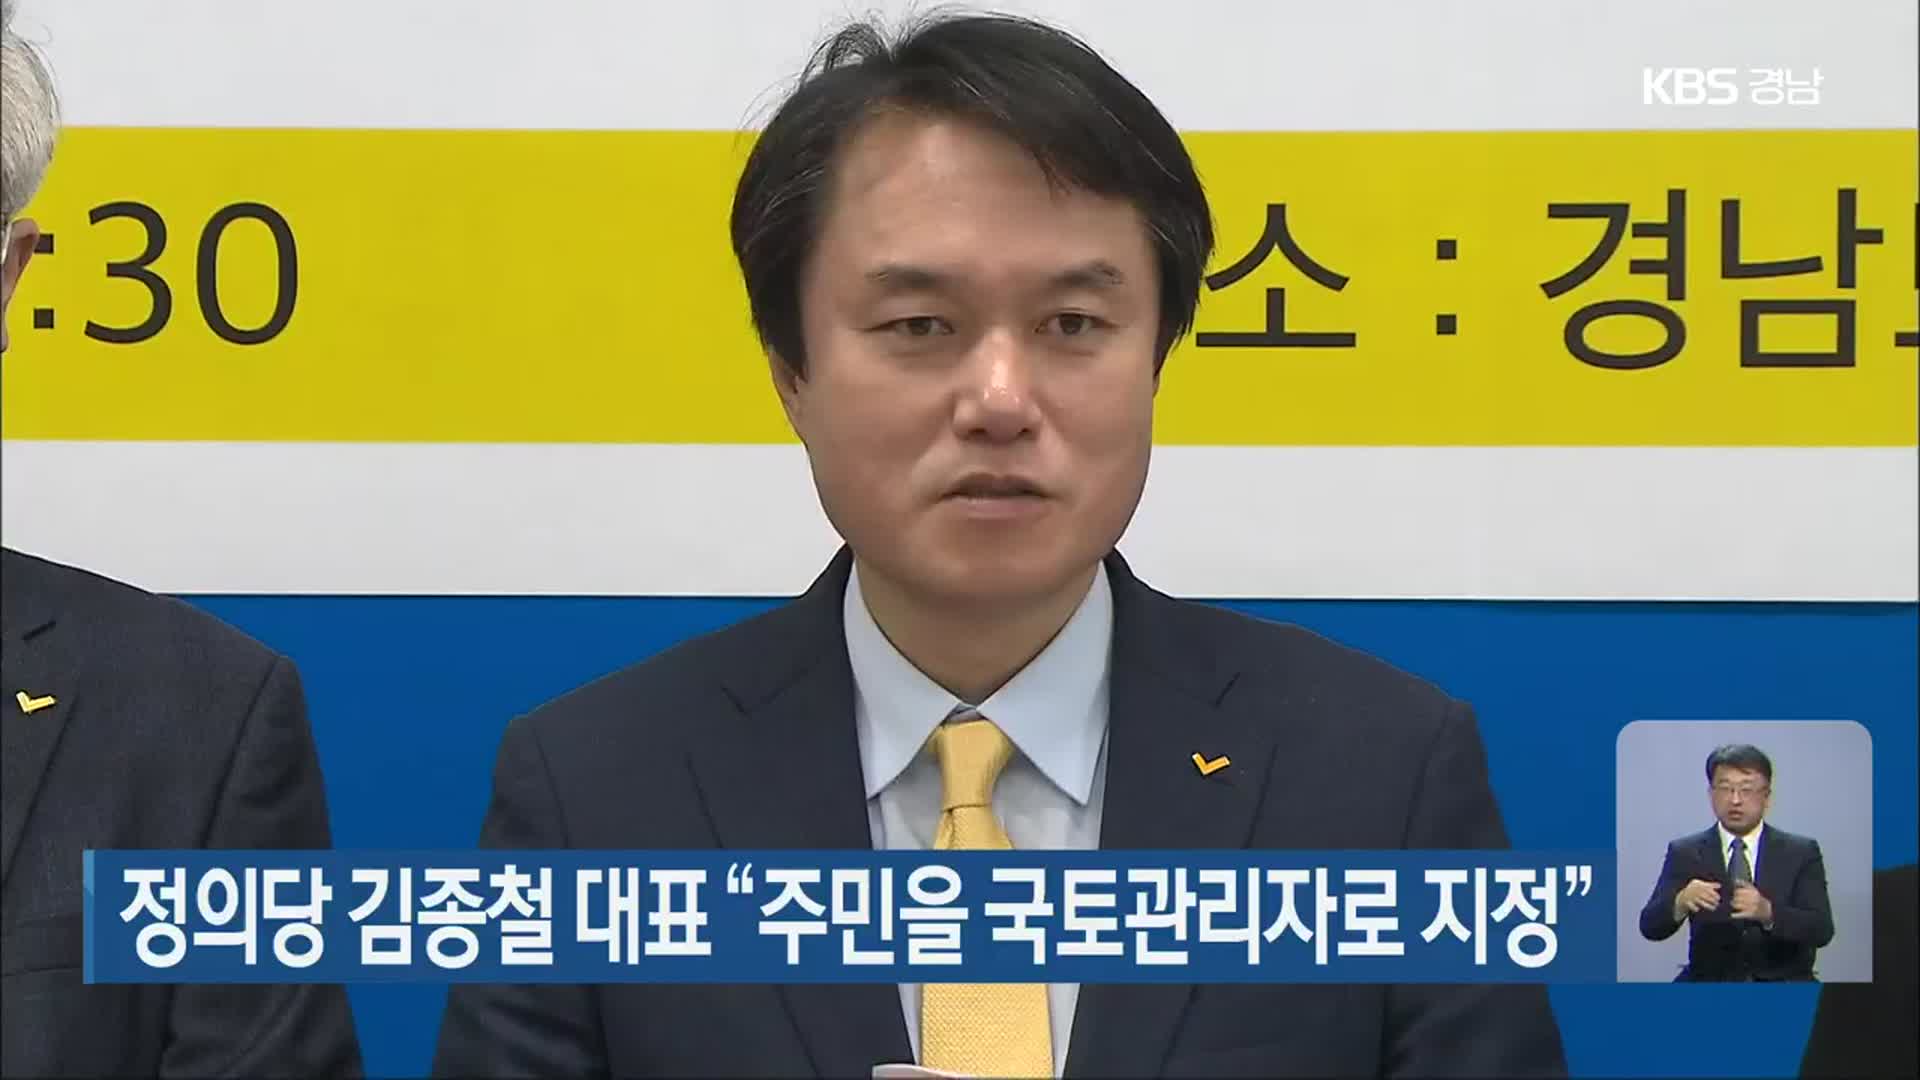 정의당 김종철 대표 “주민을 국토관리자로 지정”